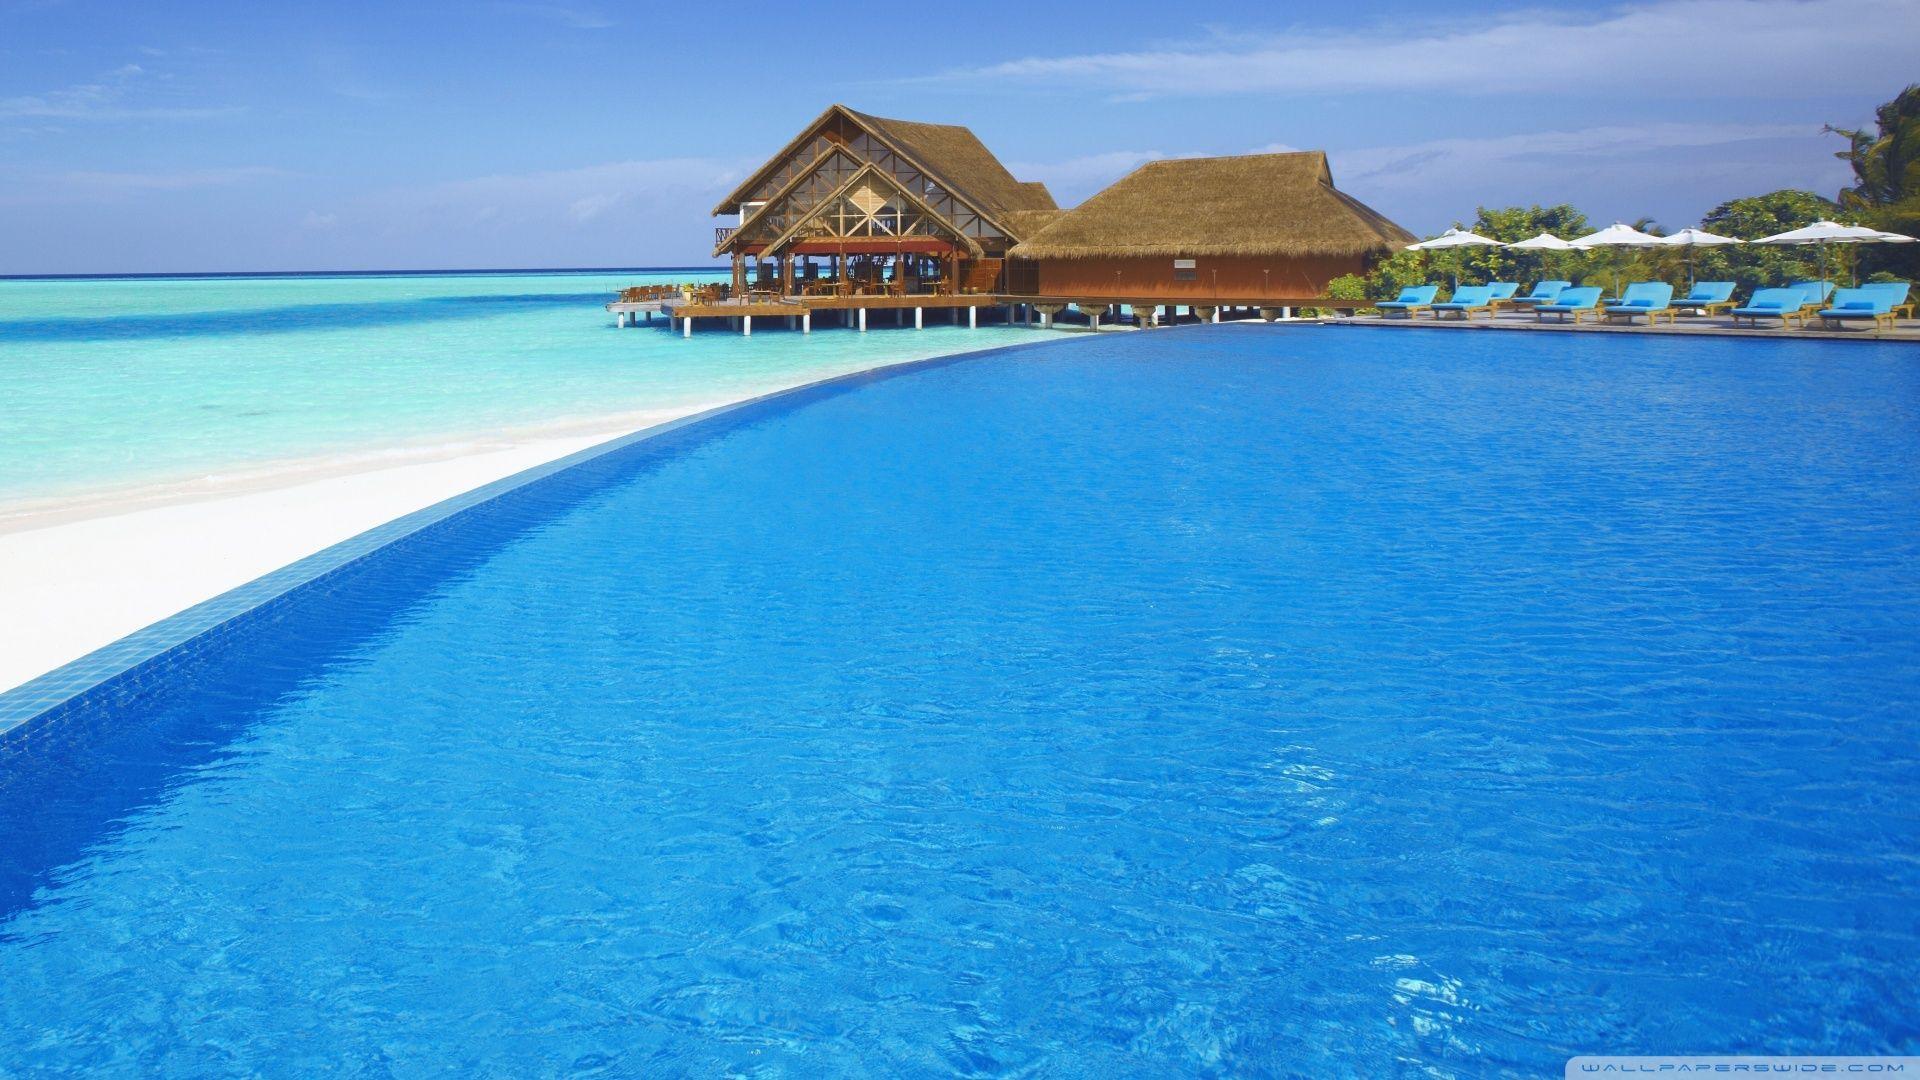 Resort Swimming Pool HD desktop wallpaper, Fullscreen, Mobile